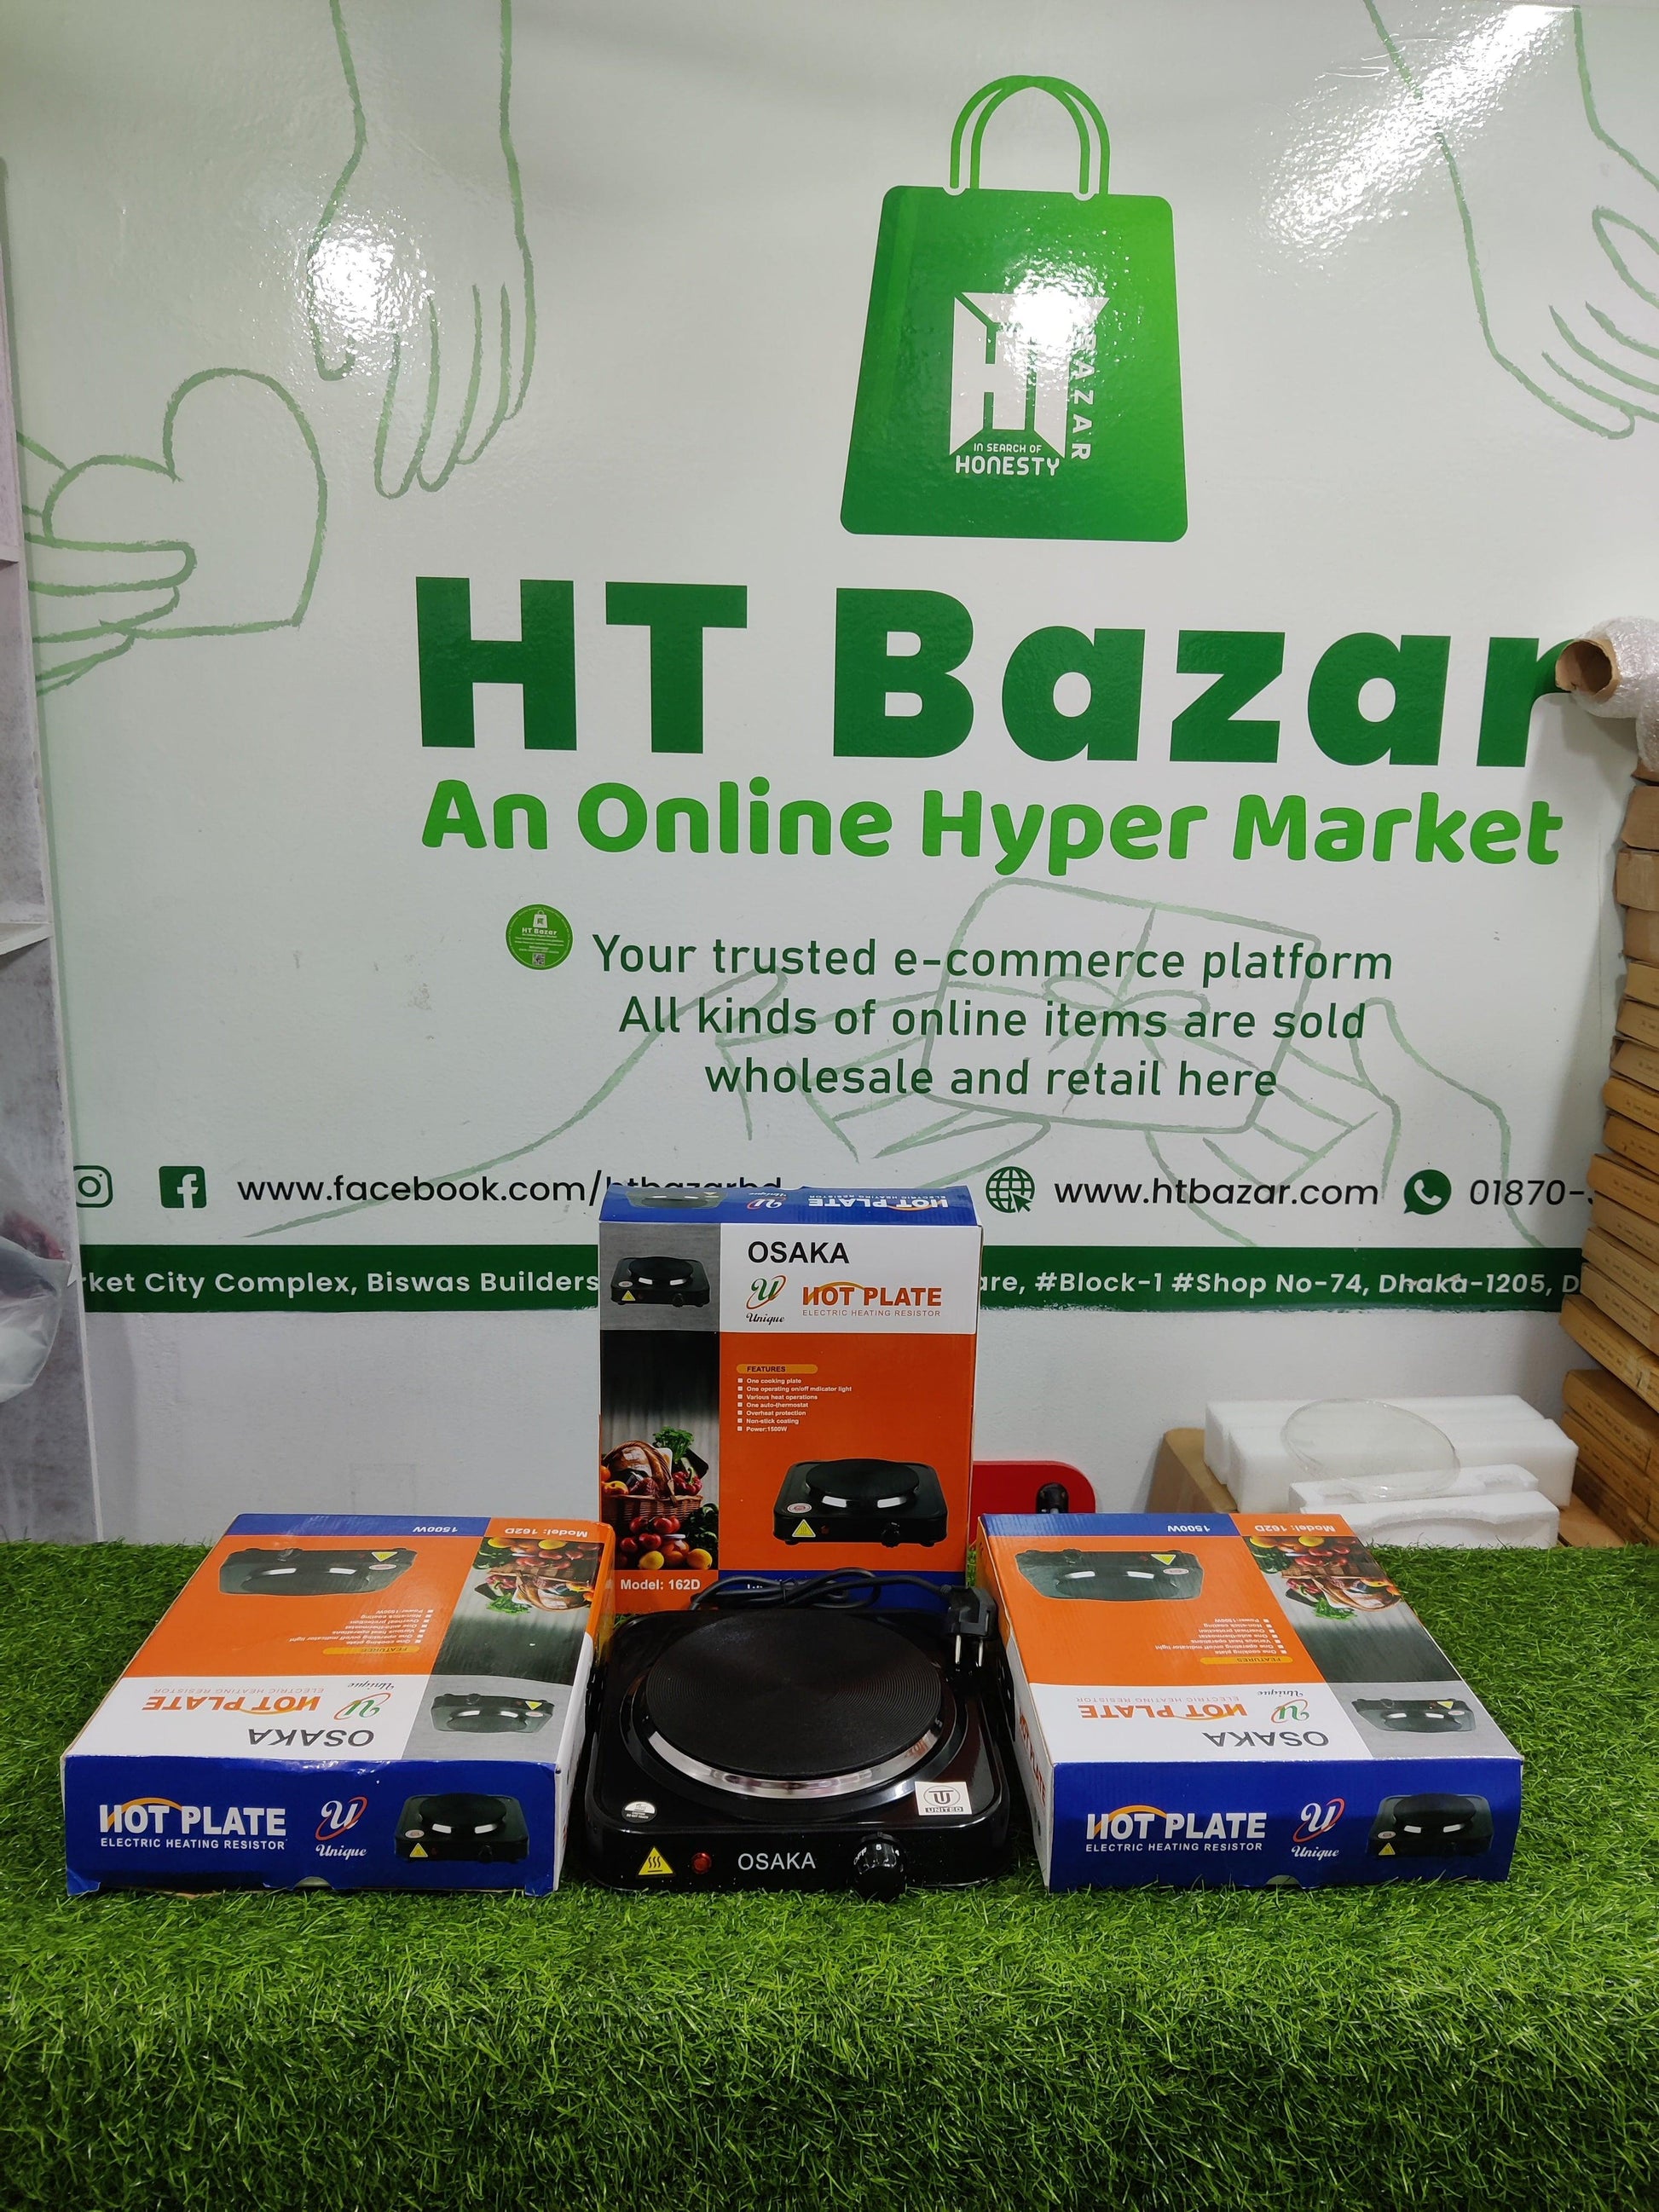 ইলেকট্রিক চুলা - Electric Stove - HT Bazar